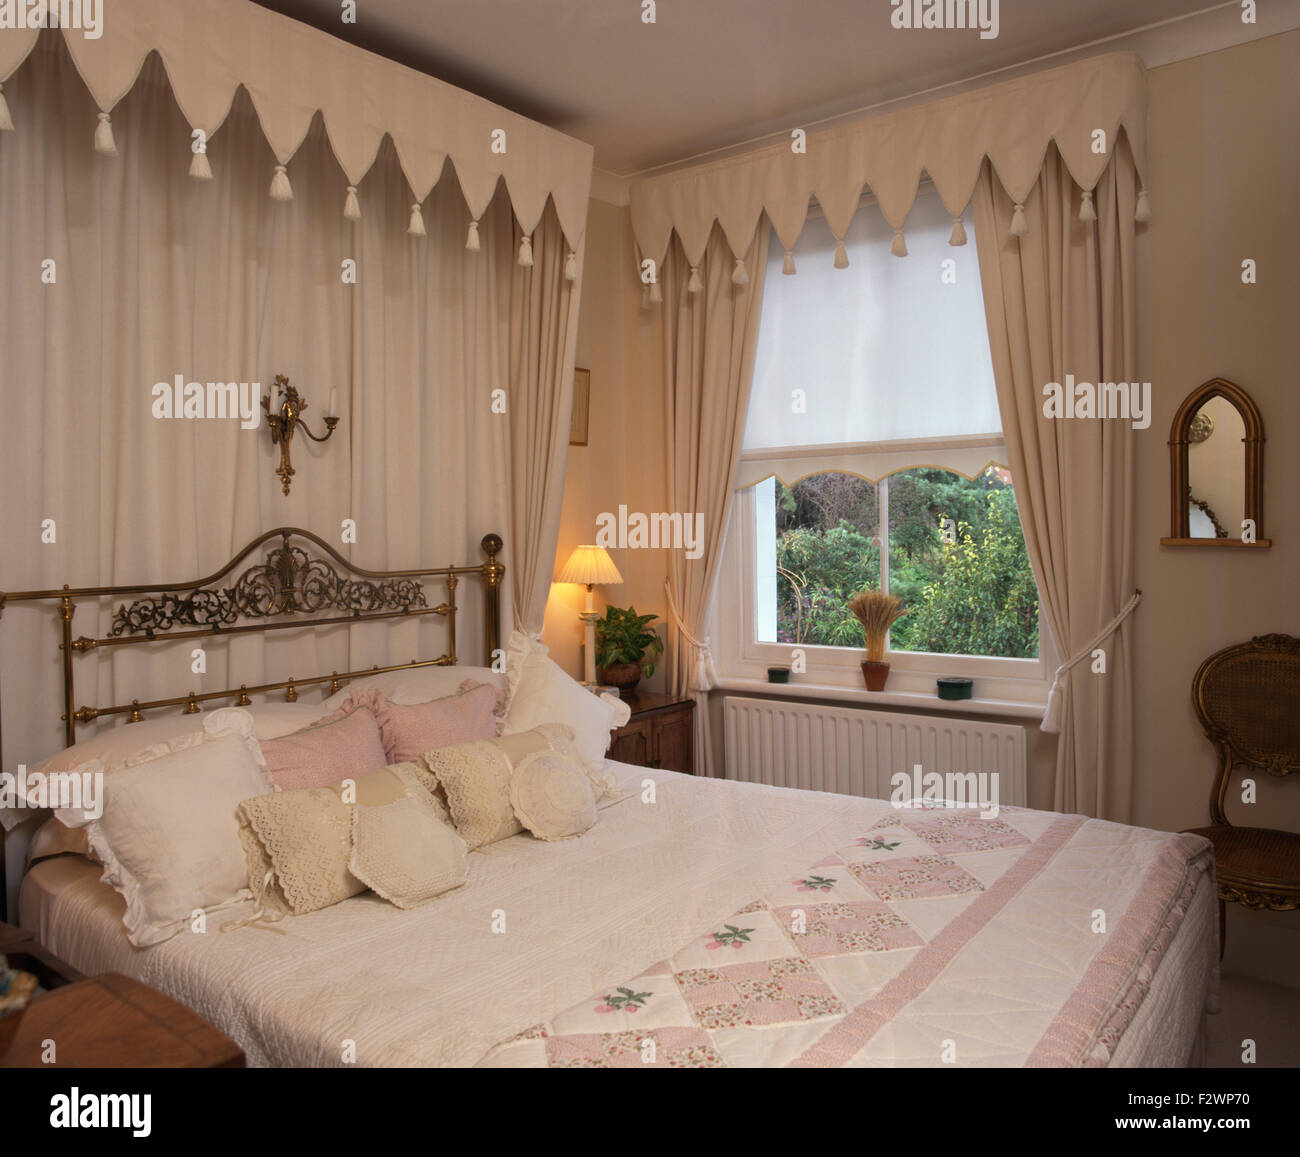 Lo stile gotico tettoia e tendaggi sopra il letto in ottone a townhouse camera da letto con la crema tende e mantovane Foto Stock